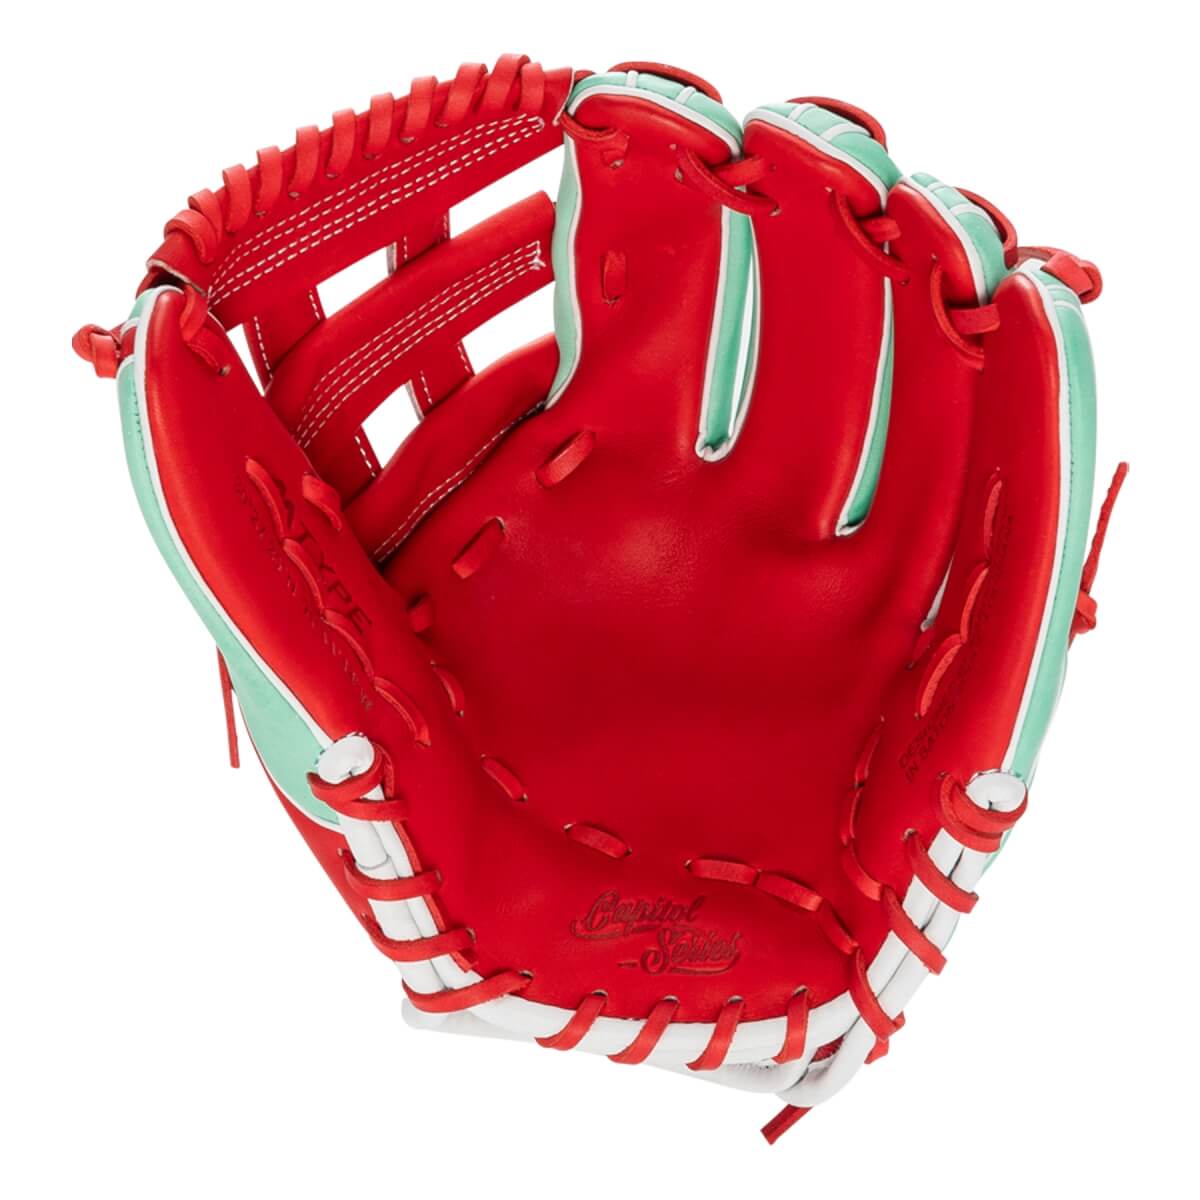 Marucci Capitol 12" Baseball Glove - MFG2CP45A3-MT/R